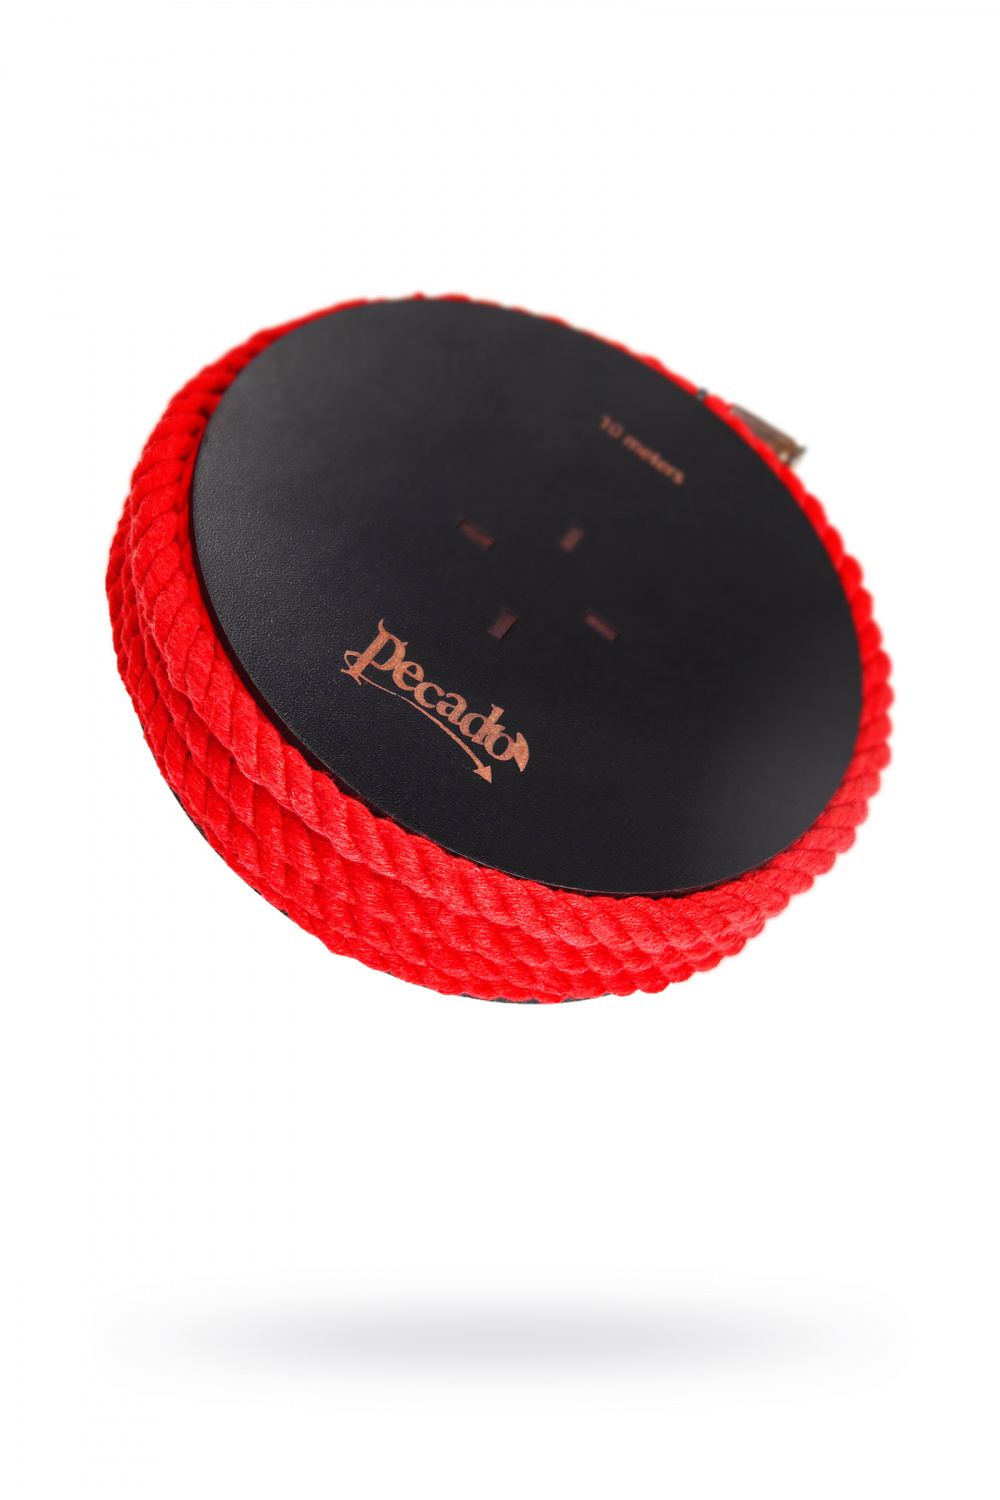 Веревка для шибари Pecado BDSM, на катушке, хлопок, красная, 10 м, Ø 8 мм (арт. 06413)